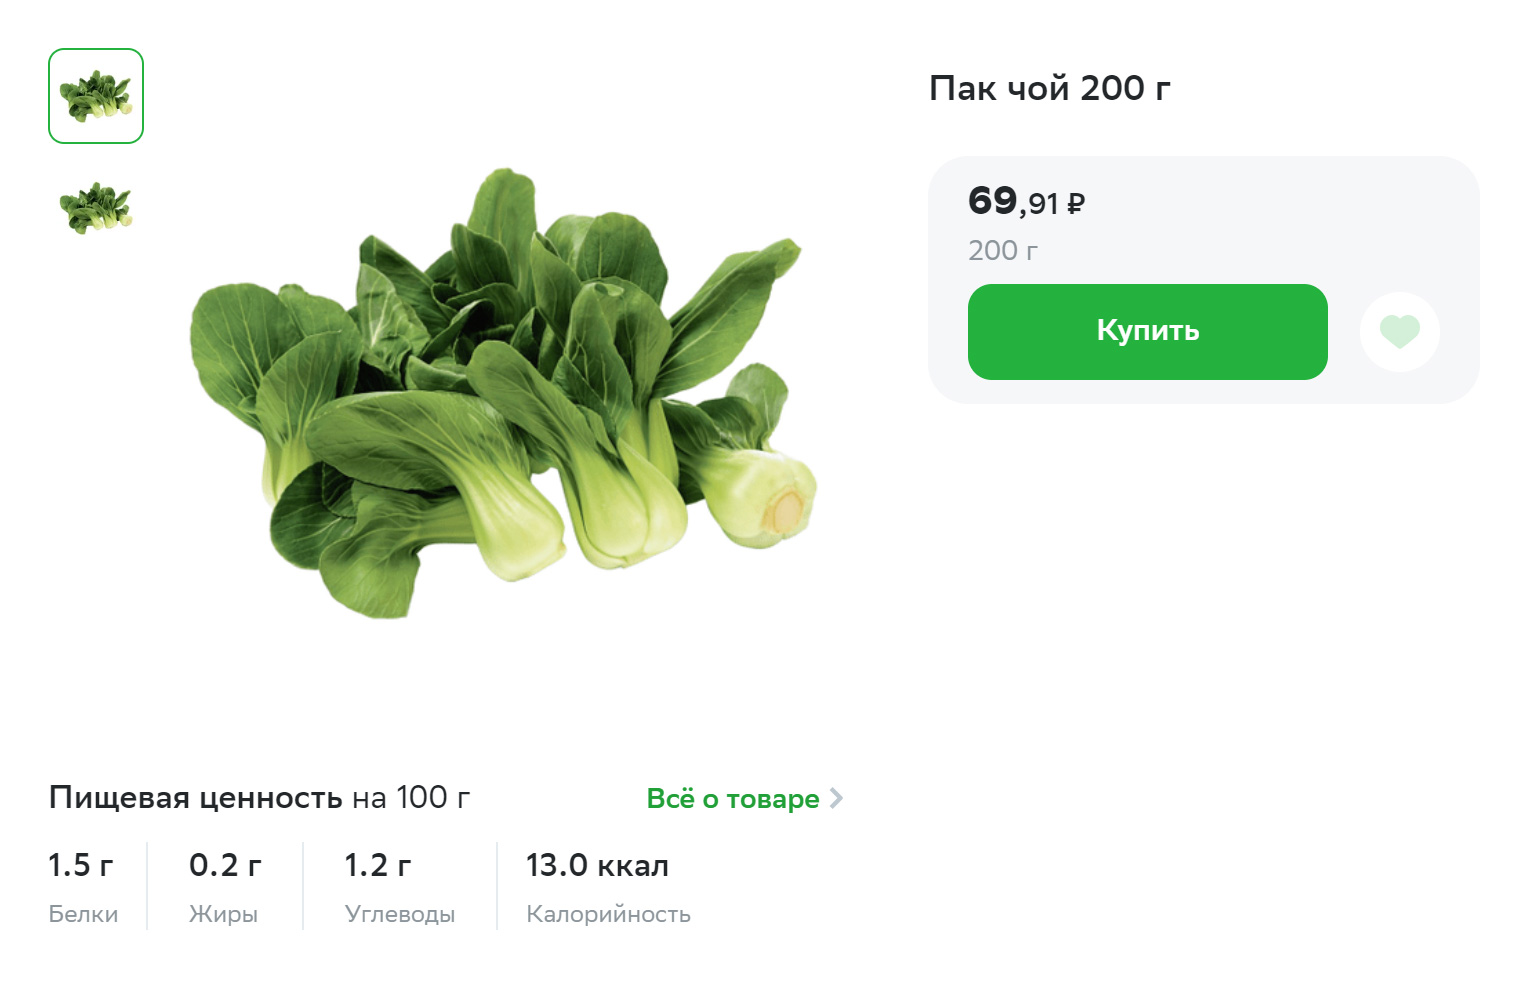 Капуста пак⁠-⁠чой стоит дешевле многих других мини⁠-⁠овощей. Источник: sbermarket.ru